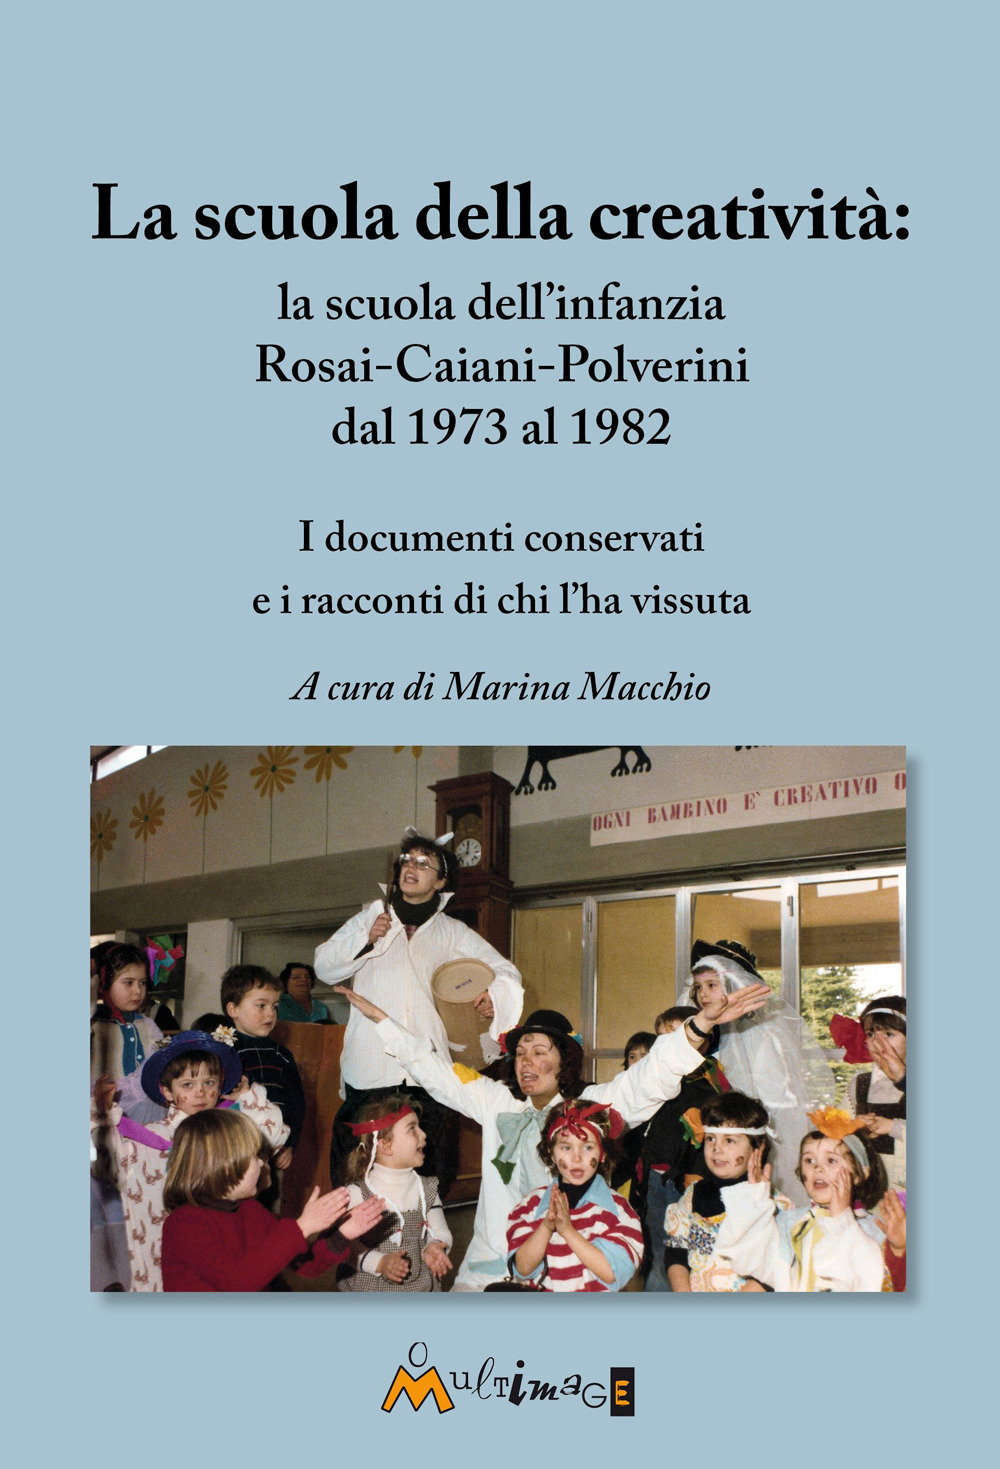 La scuola della creatività: la Rosai-Caiani-Polverini dal 1973 al 1982. I documenti conservati e i racconti di chi l'ha vissuta